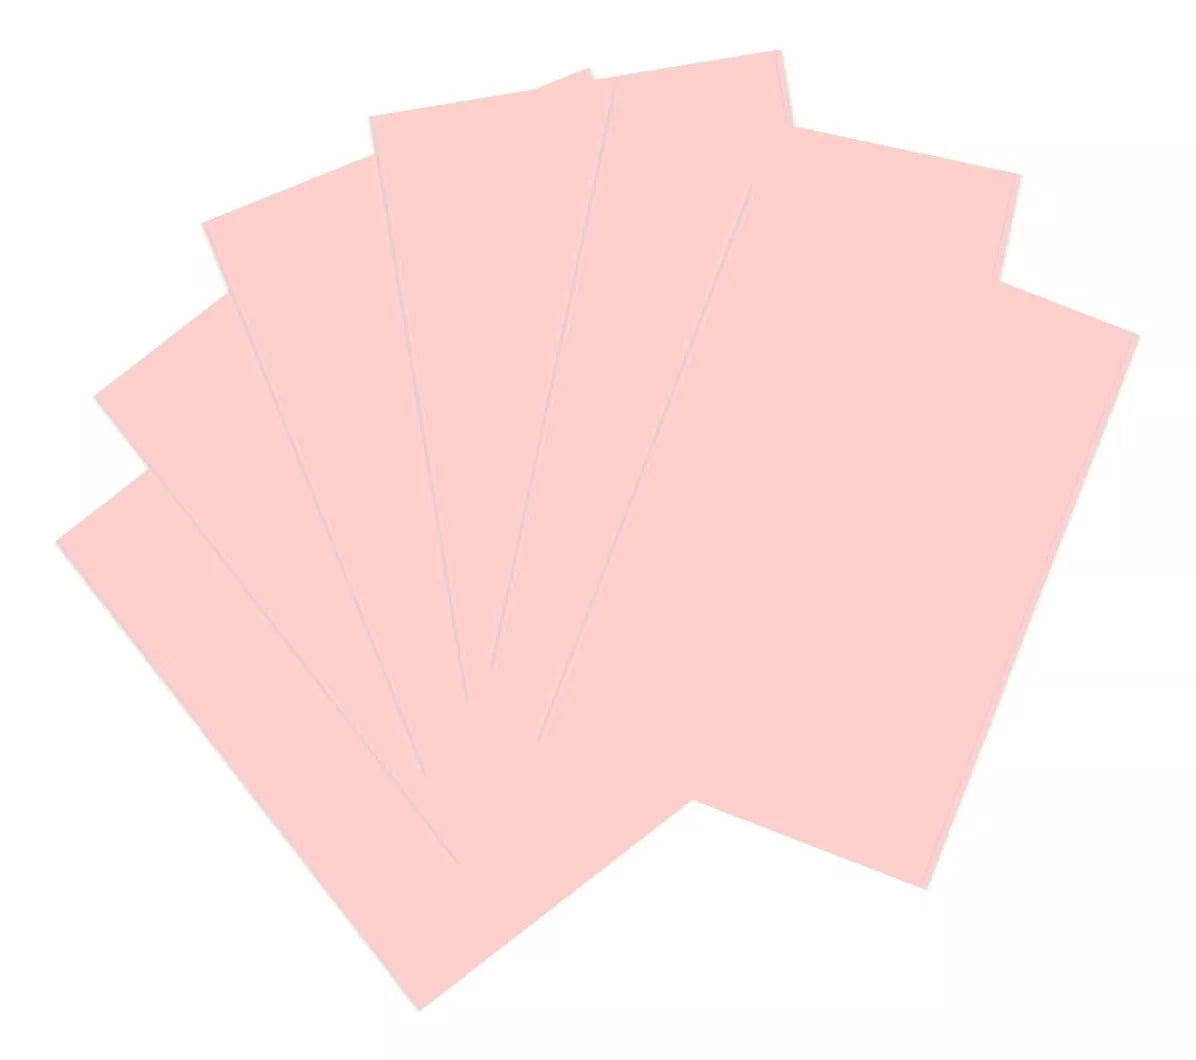 100 Hojas Color Pastel Eurocolors Tamaño Carta Color Elegir